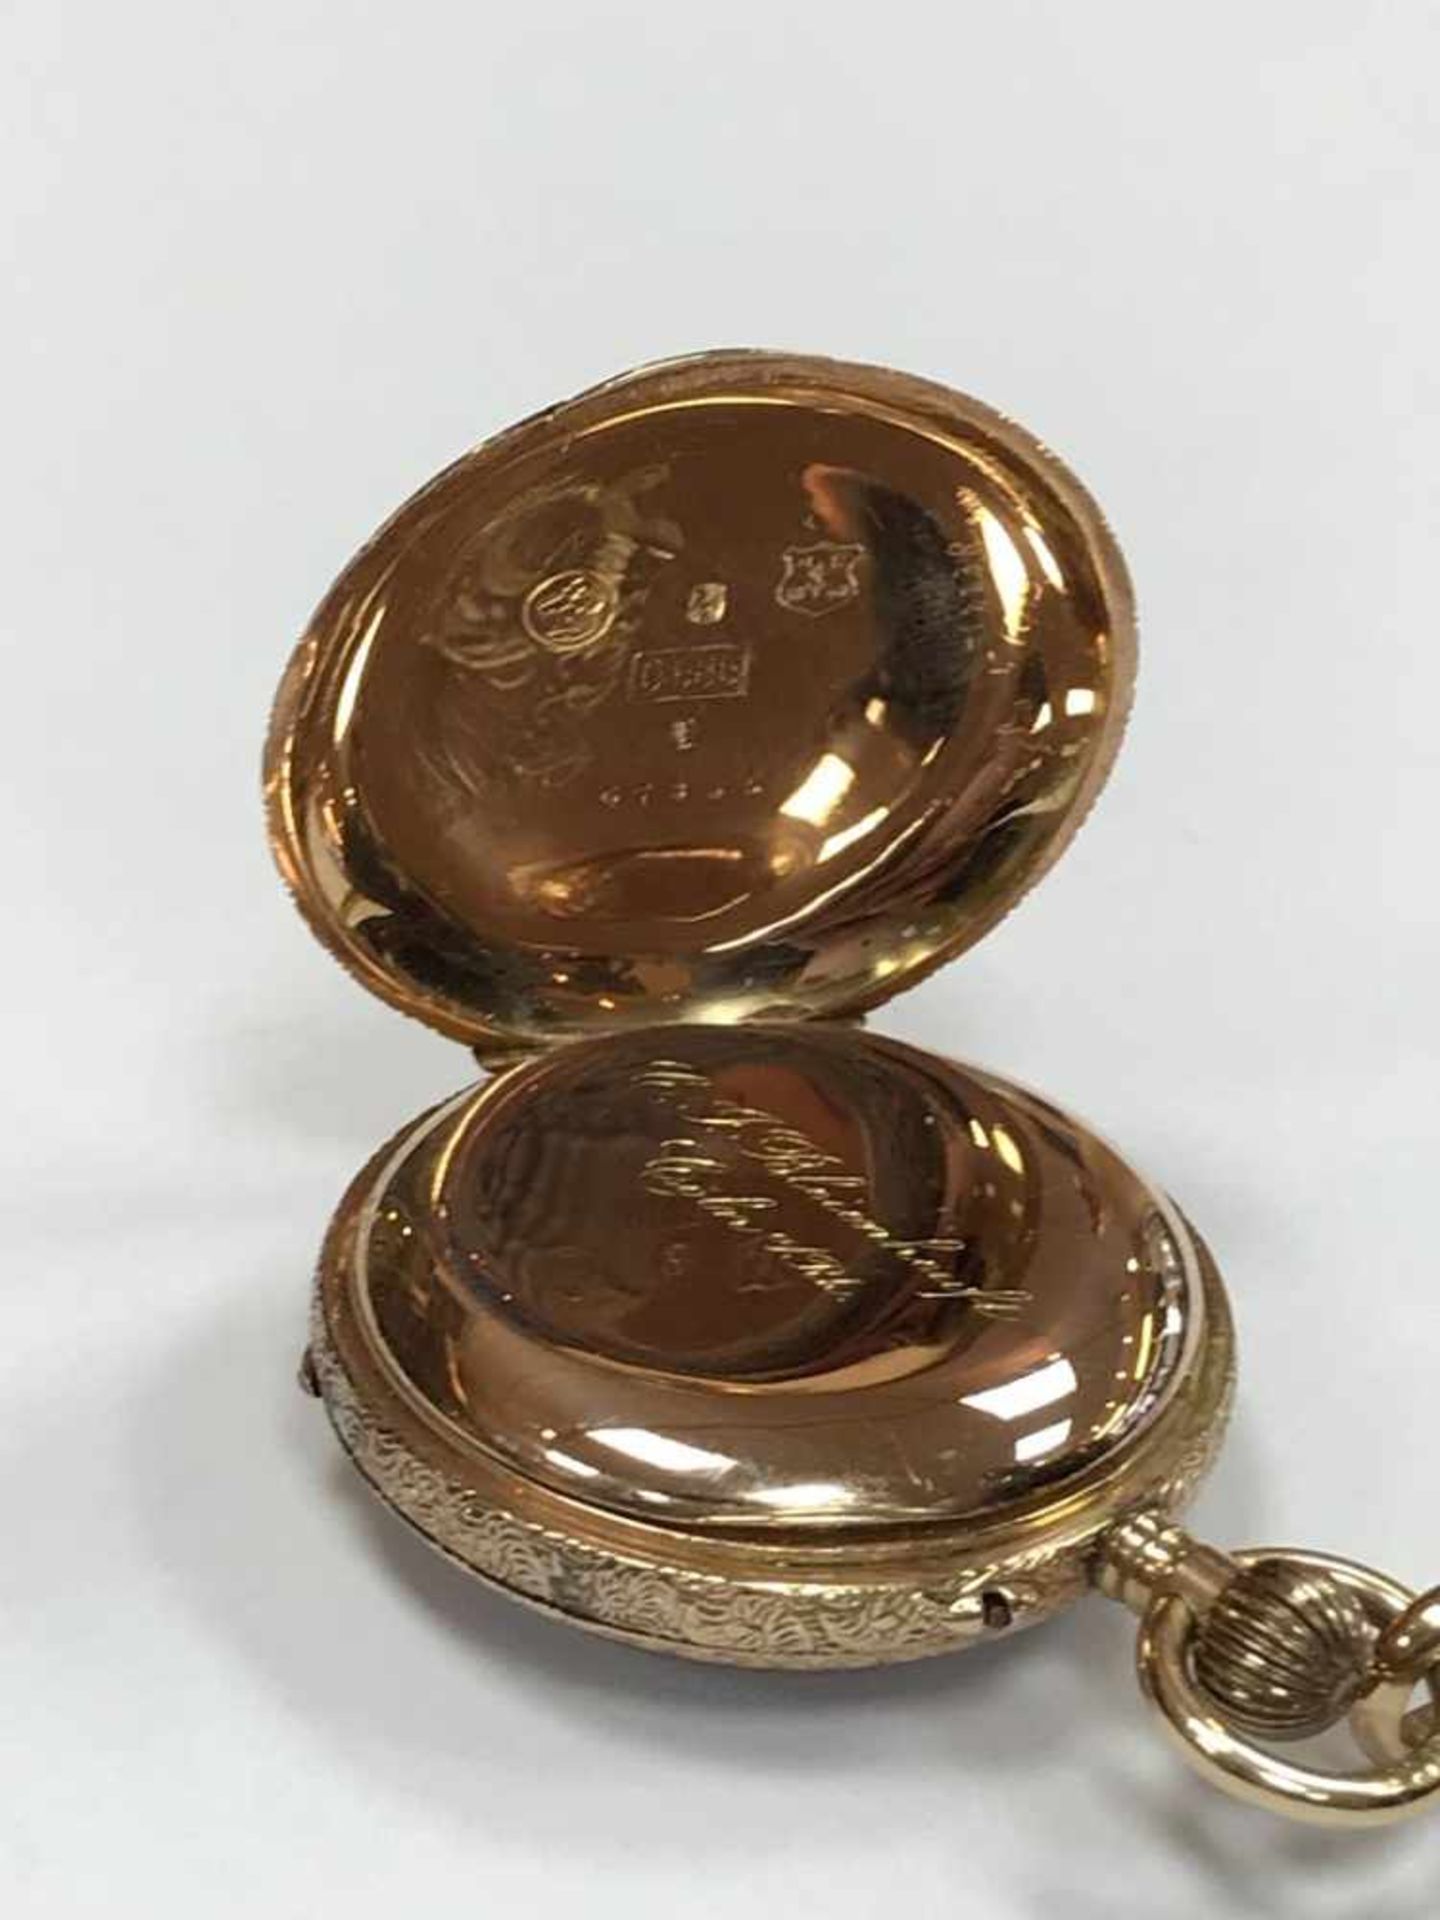 Gold Taschenuhr 585 "Bleienheuft Cöln a Rhein"Wohl Deutschland um 1880, Material: 585 Gold, Uhr - Image 5 of 6